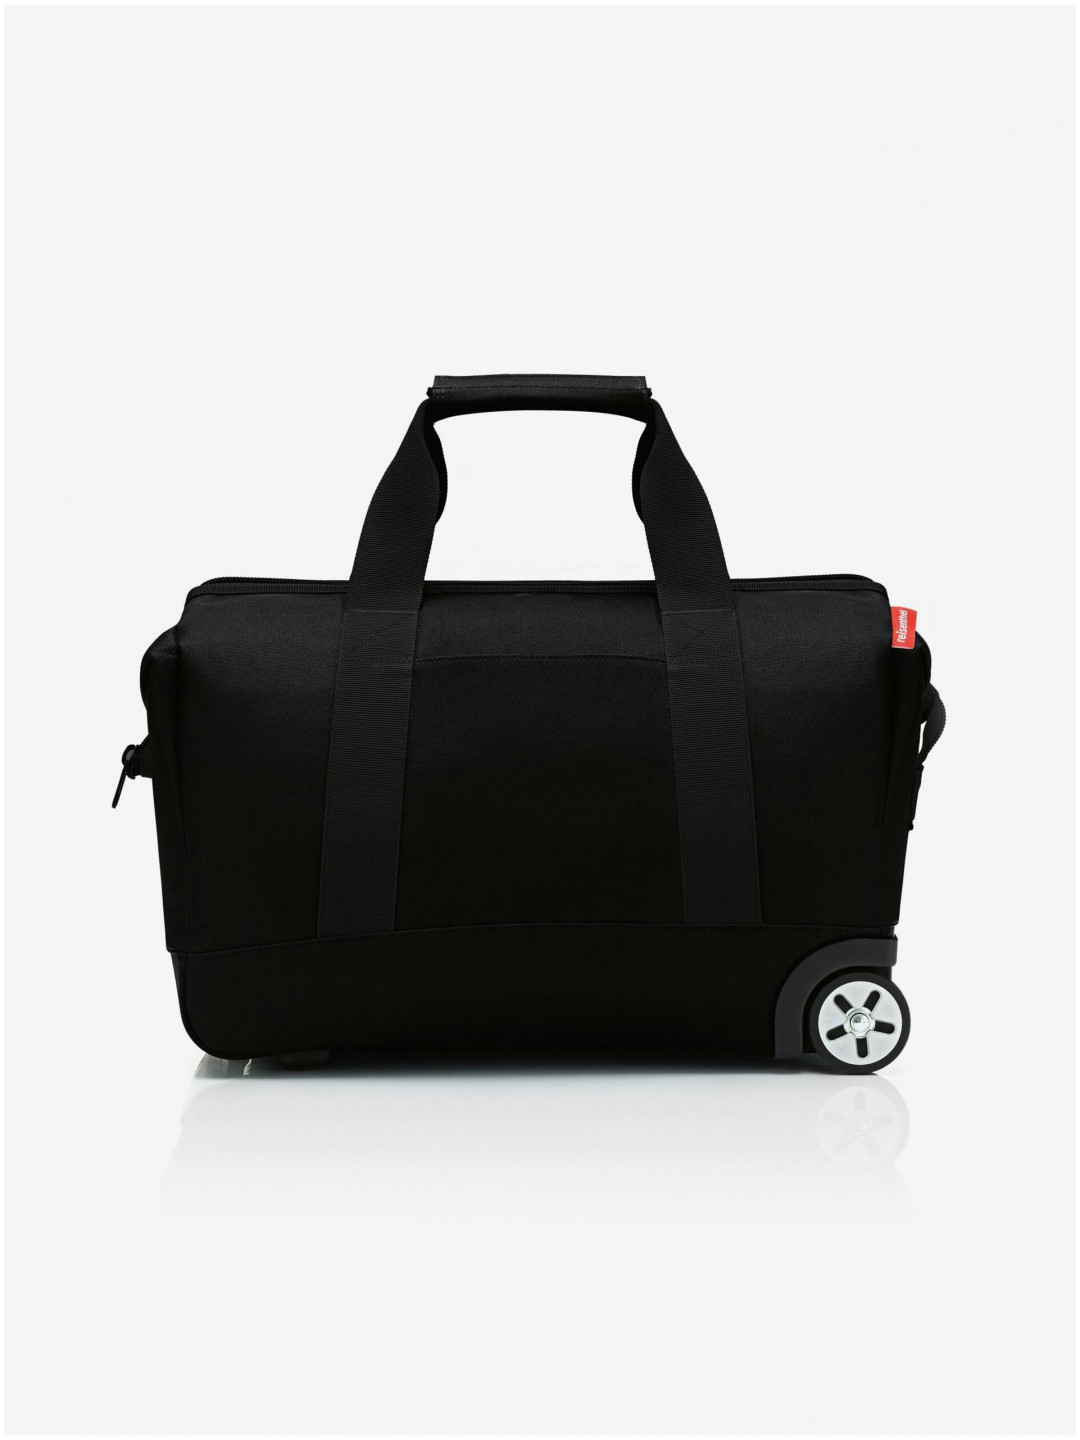 Černá cestovní taška na kolečkách Reisenthel Allrounder Trolley